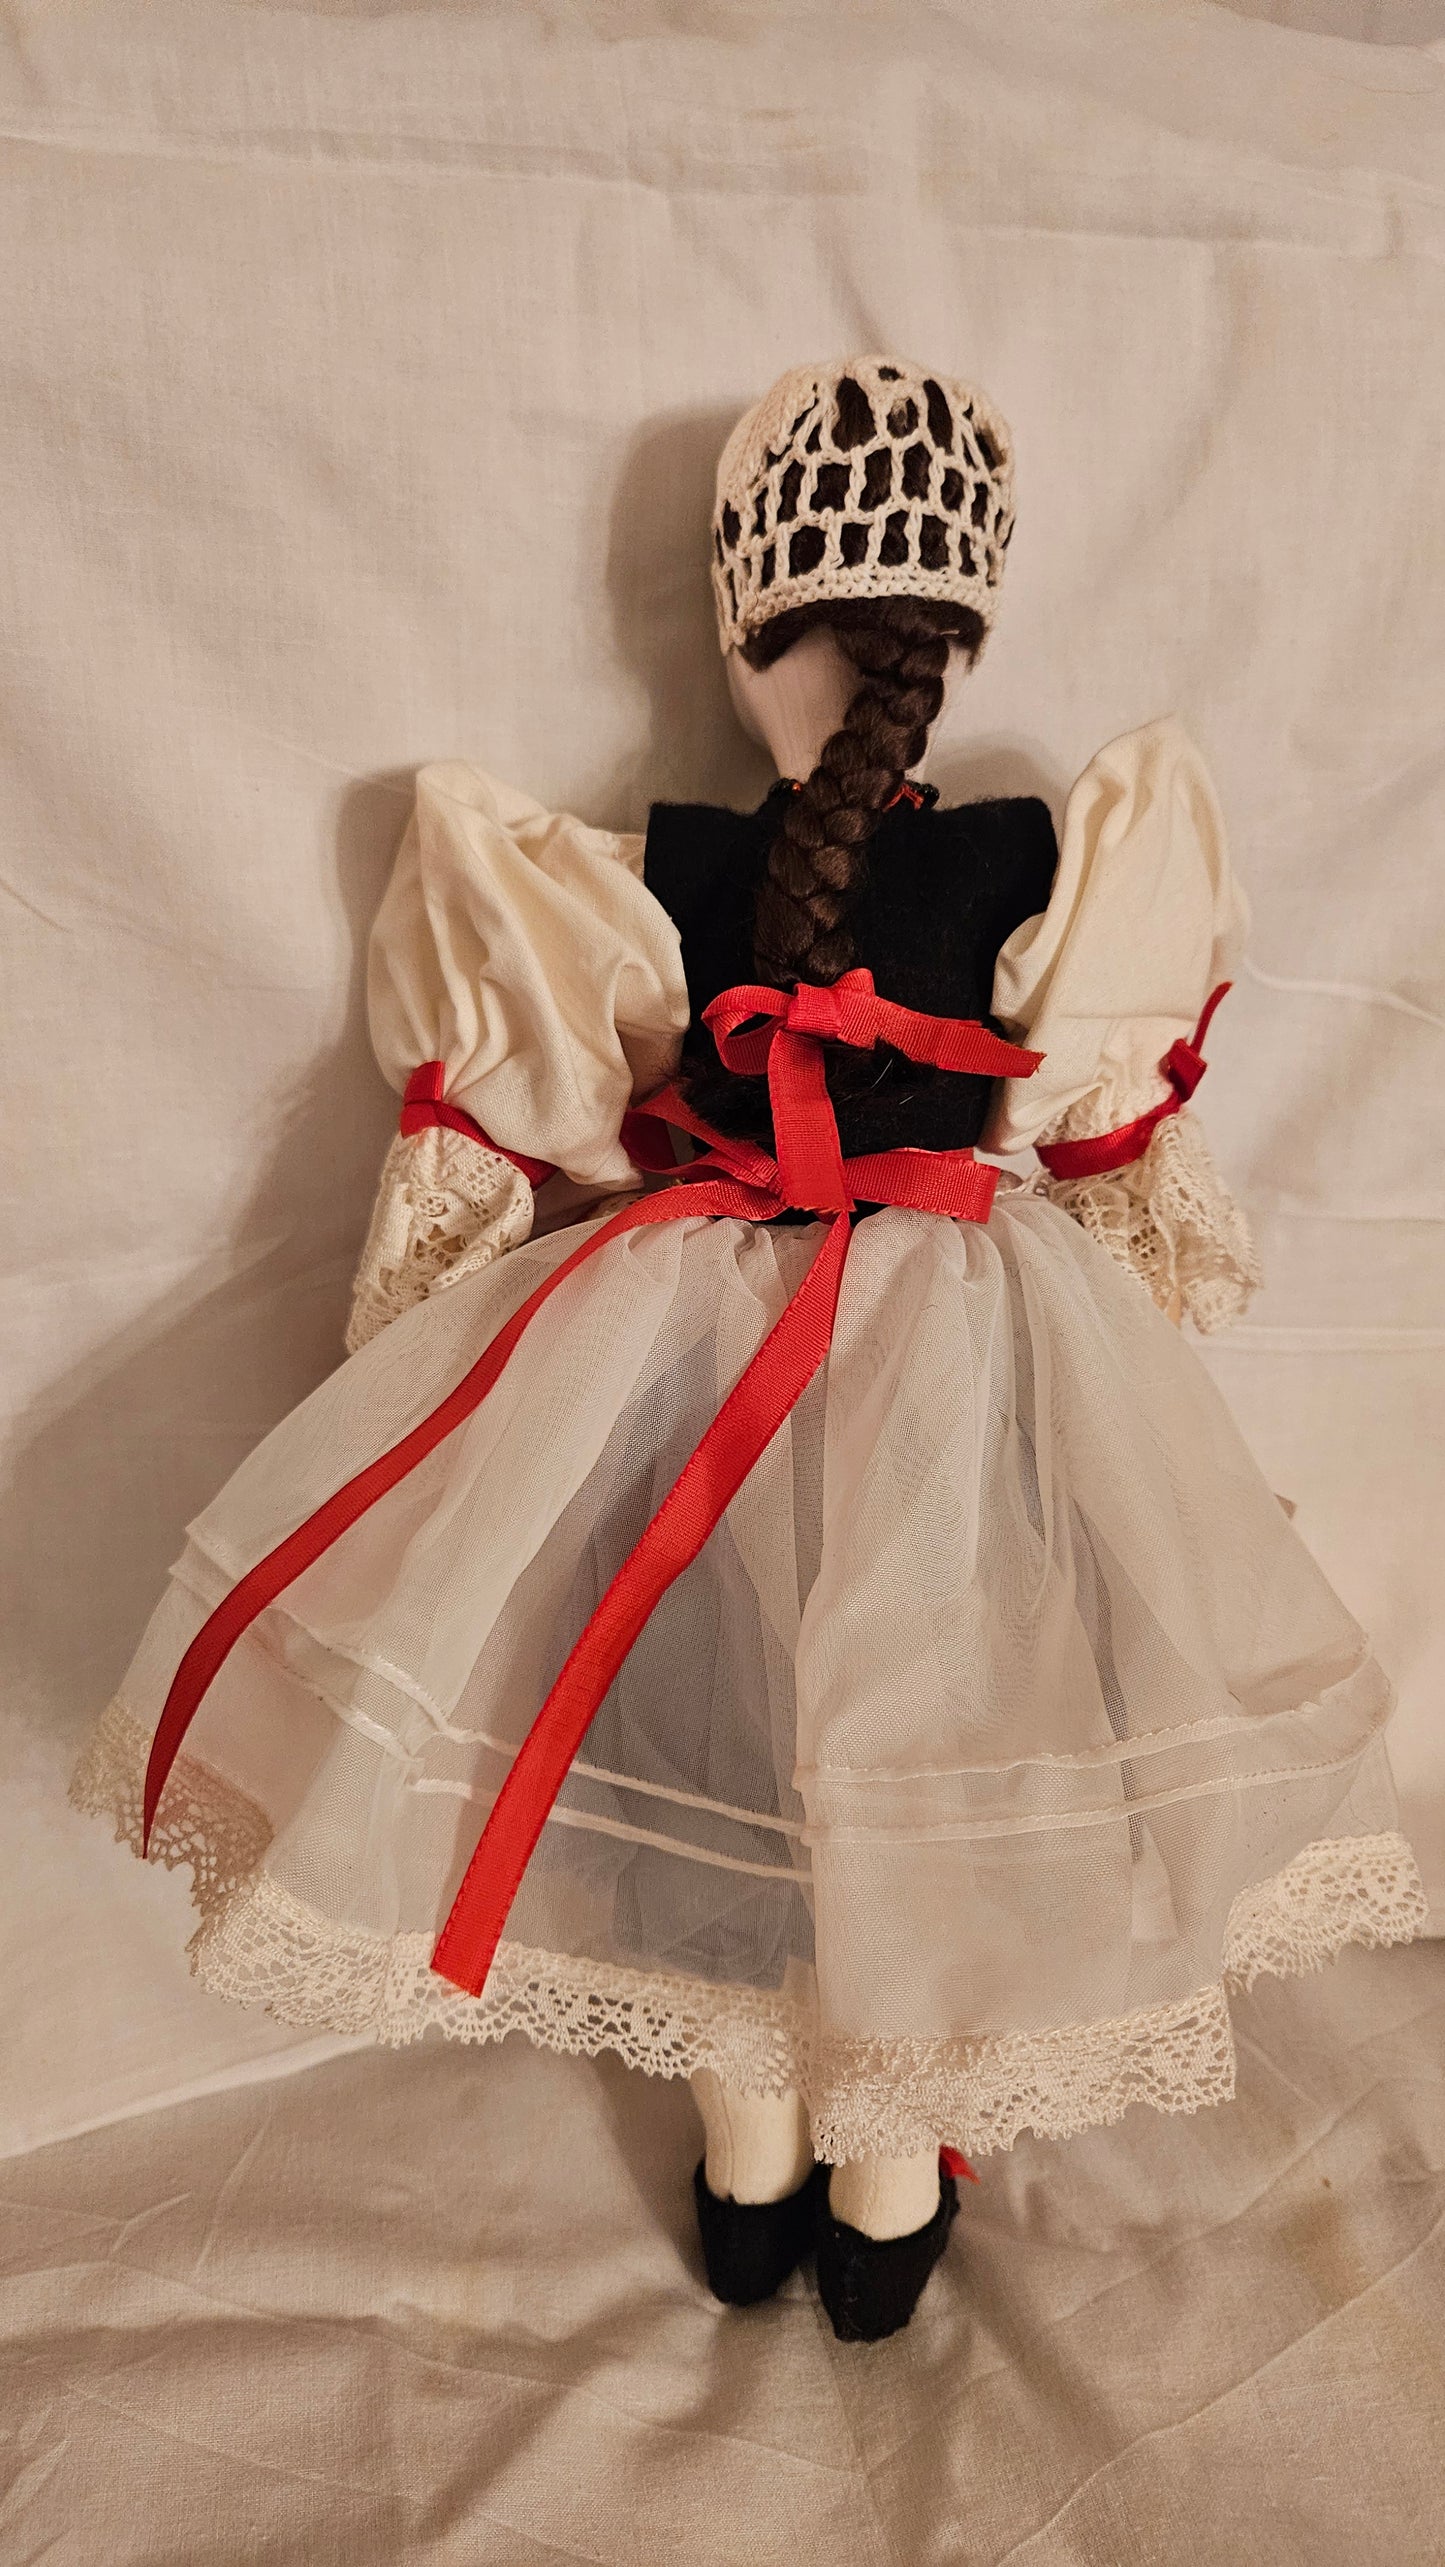 Bo Kroj Czech Rosy Porcelain Doll in Original National Costume